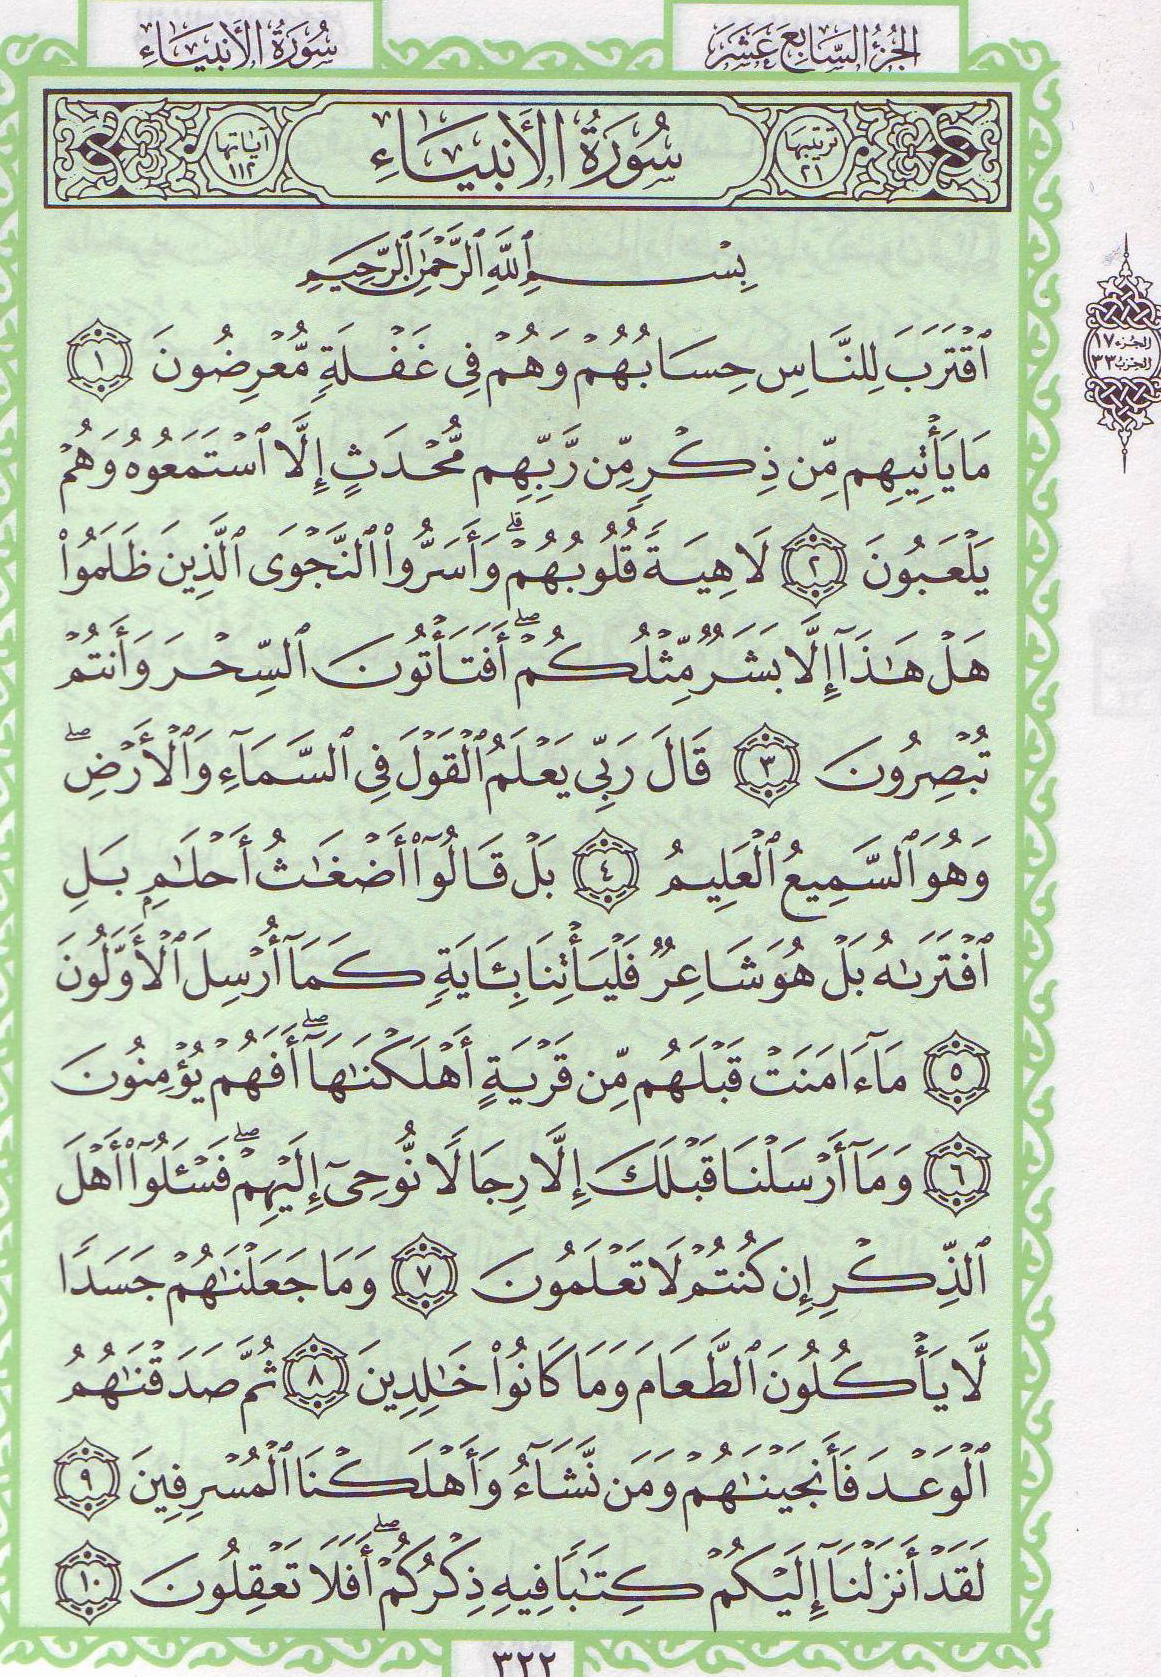 Qur'an_21_4.jpg